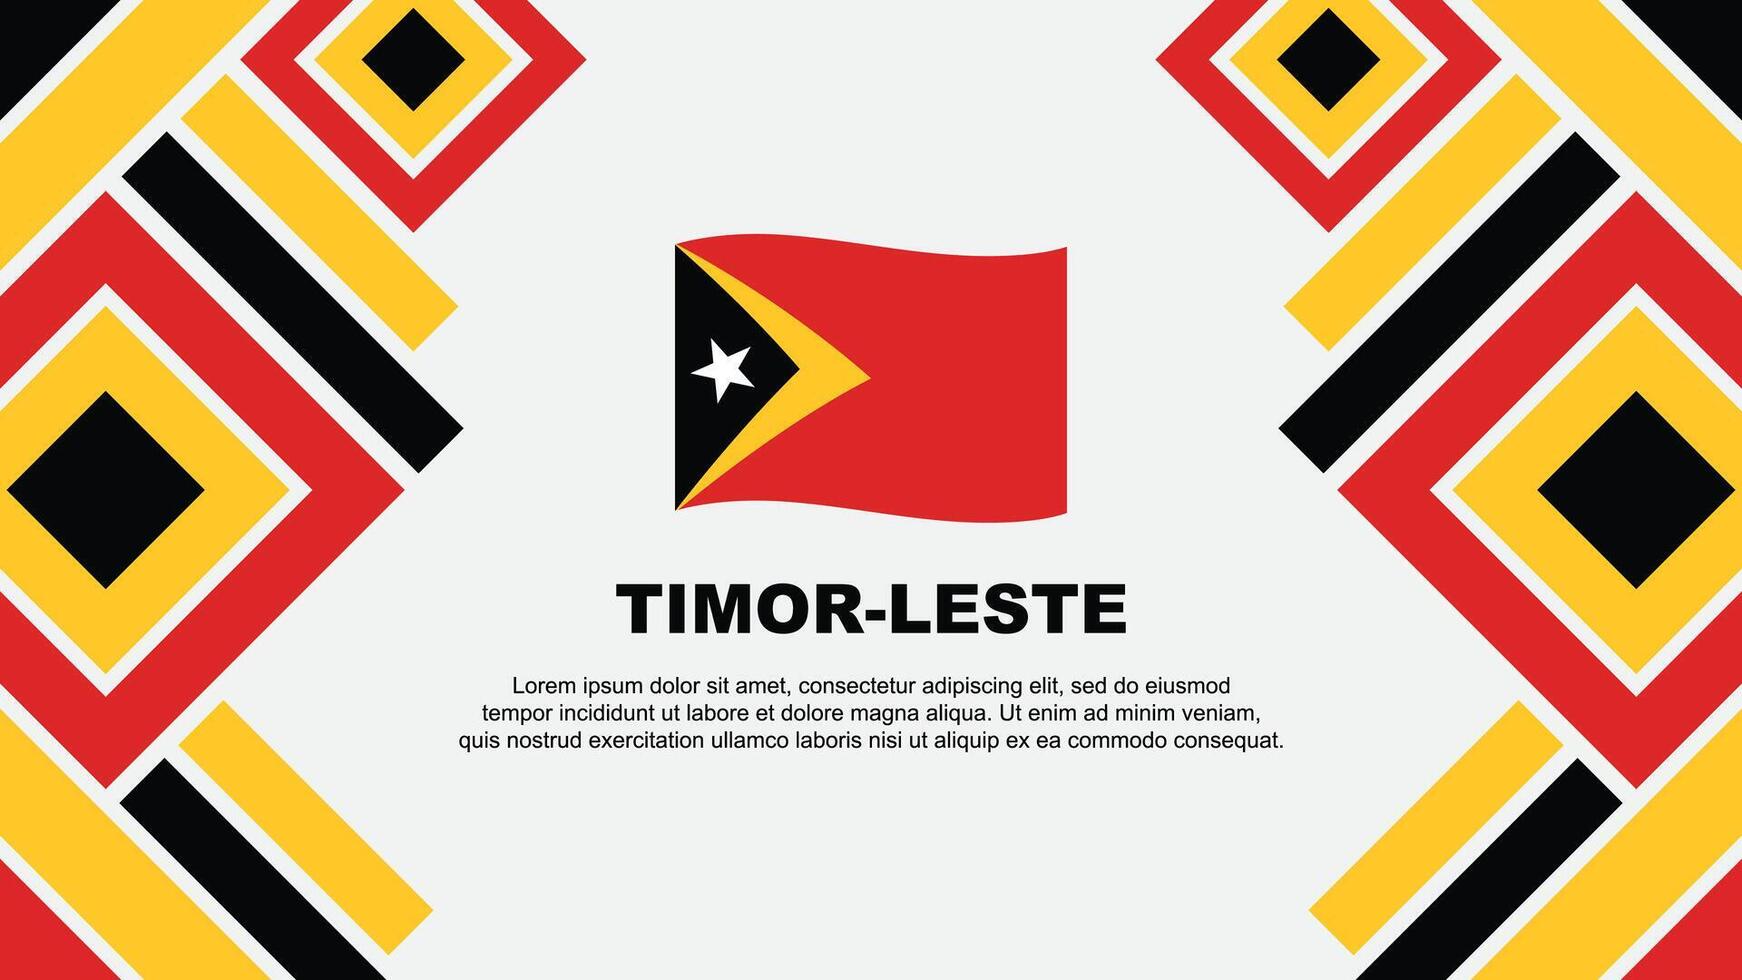 Timor Leste Flag Abstract Background Design Template. Timor Leste Independence Day Banner Wallpaper Vector Illustration. Timor Leste